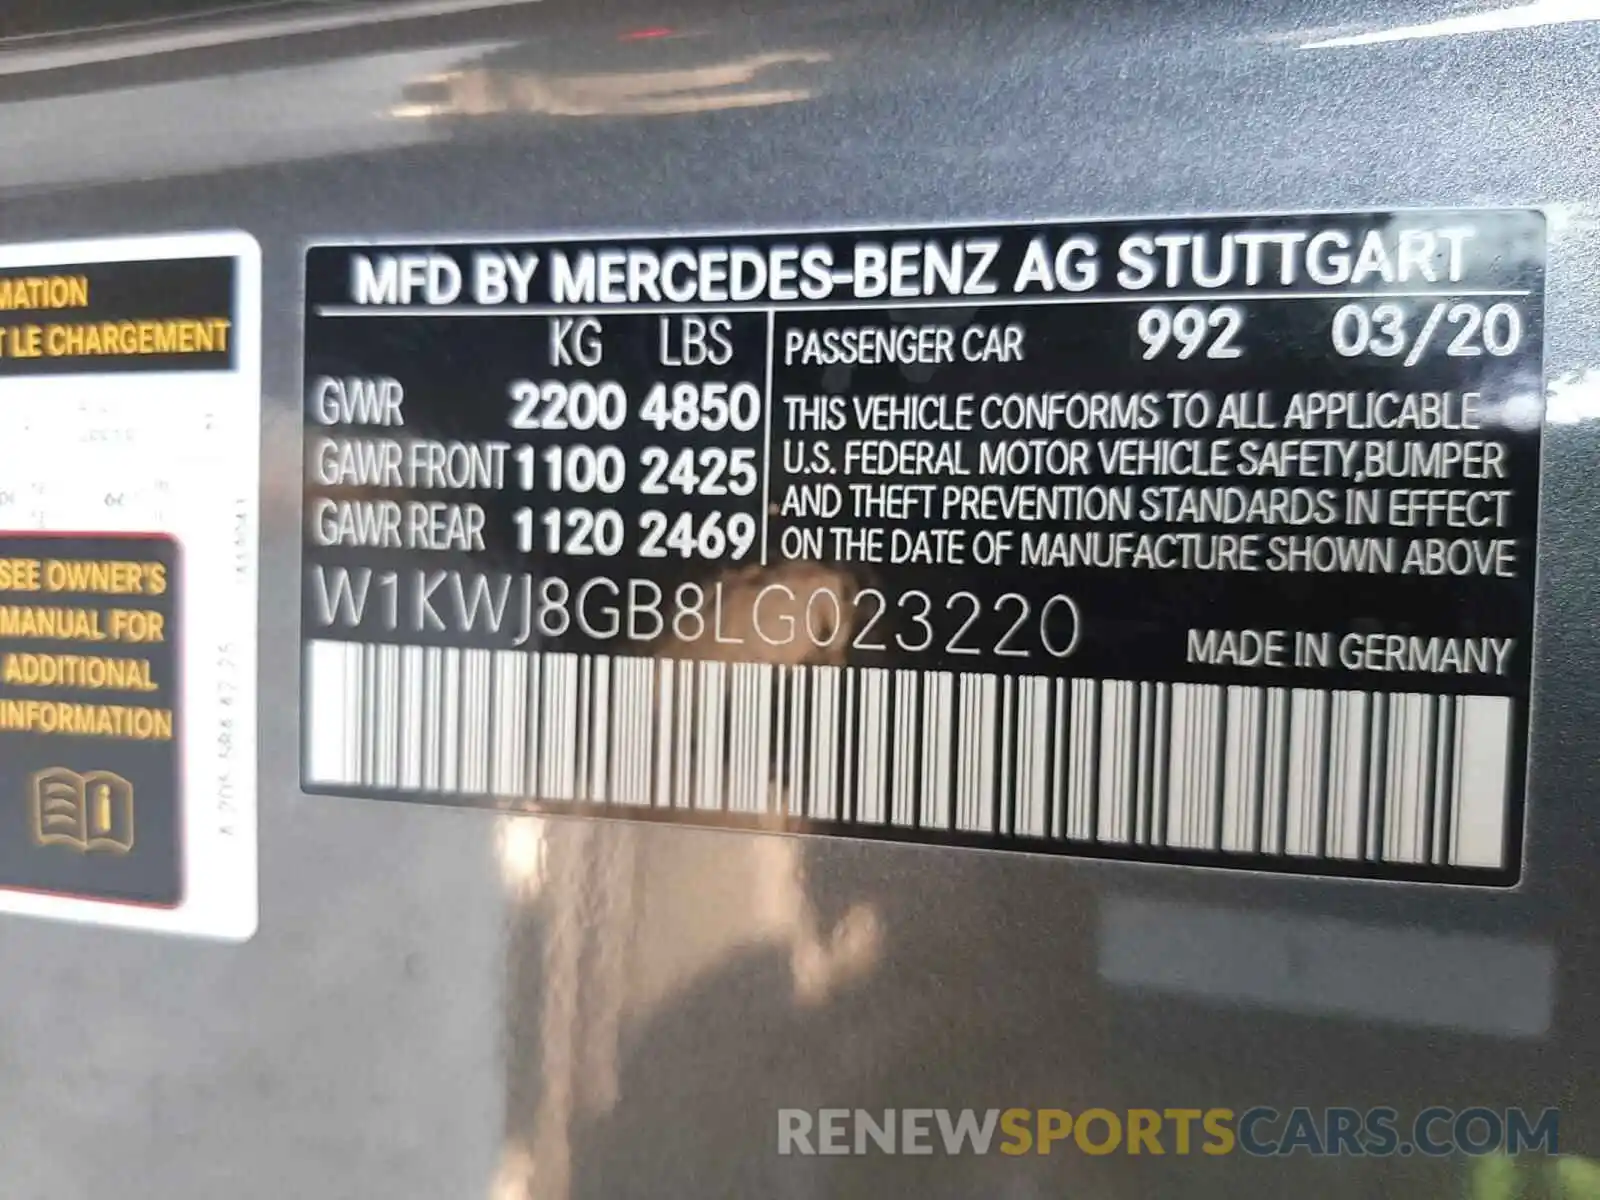 10 Photograph of a damaged car W1KWJ8GB8LG023220 MERCEDES-BENZ AMG 2020